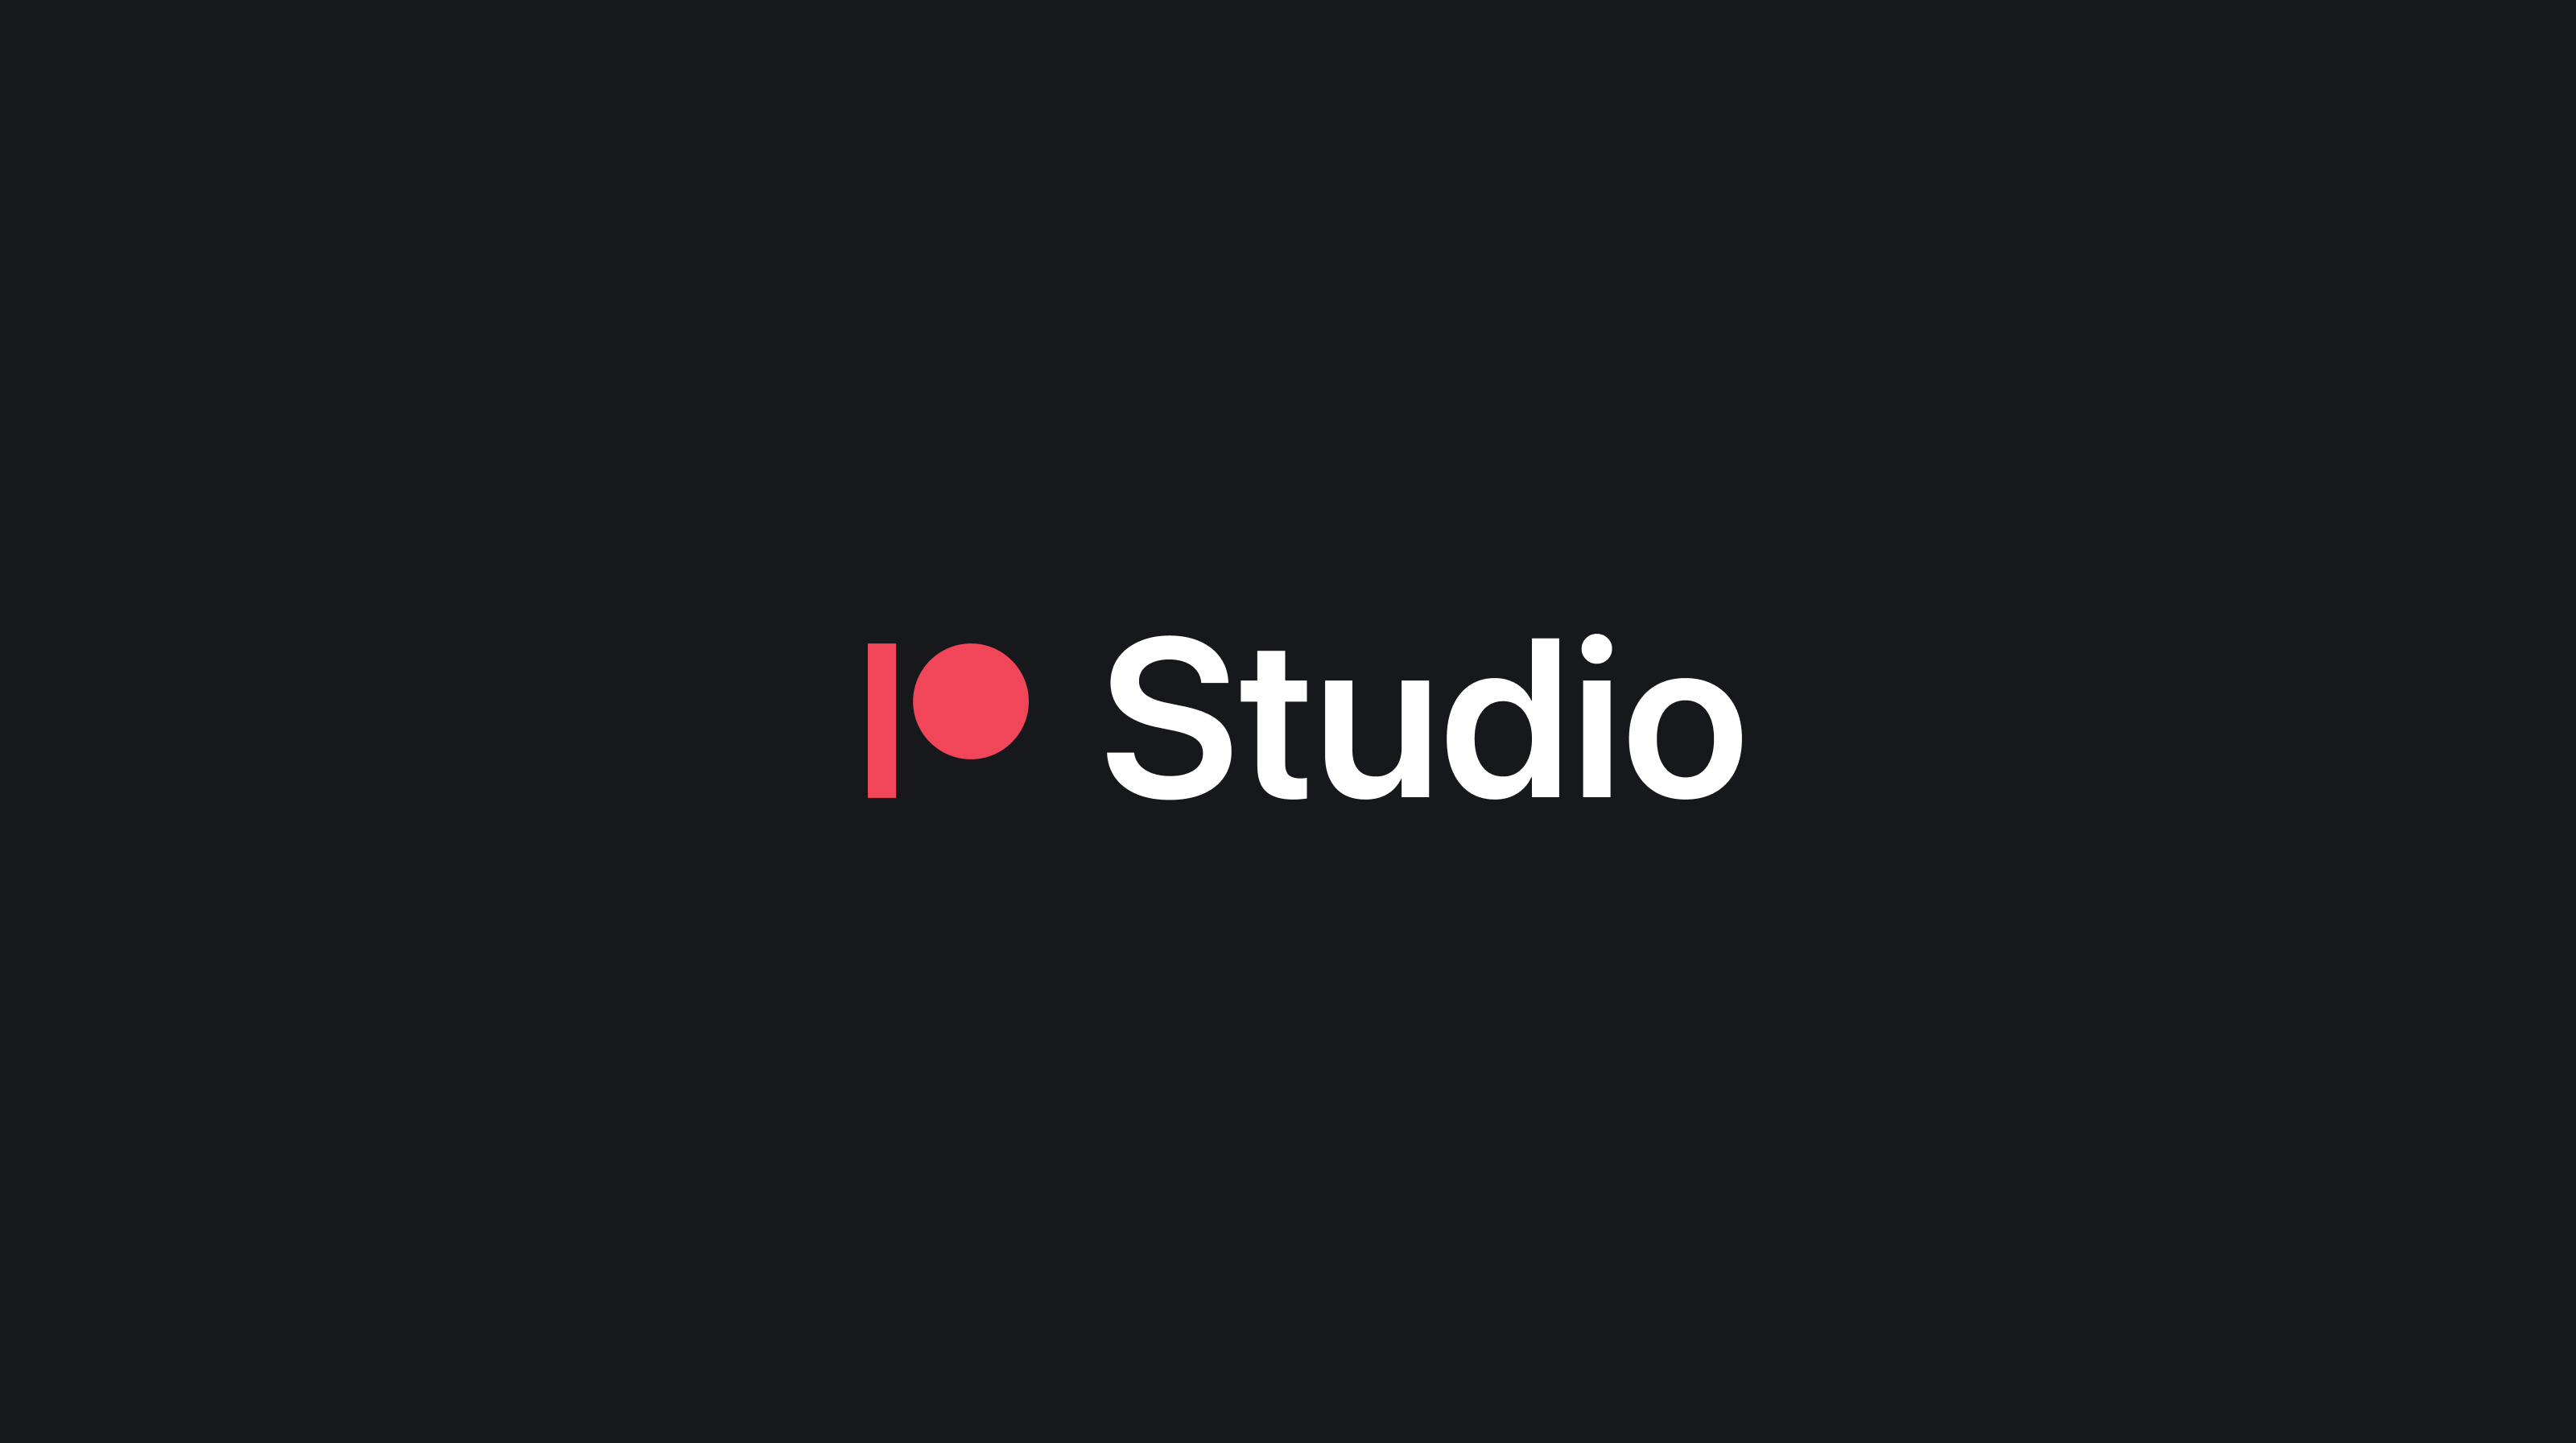 The Studio logo